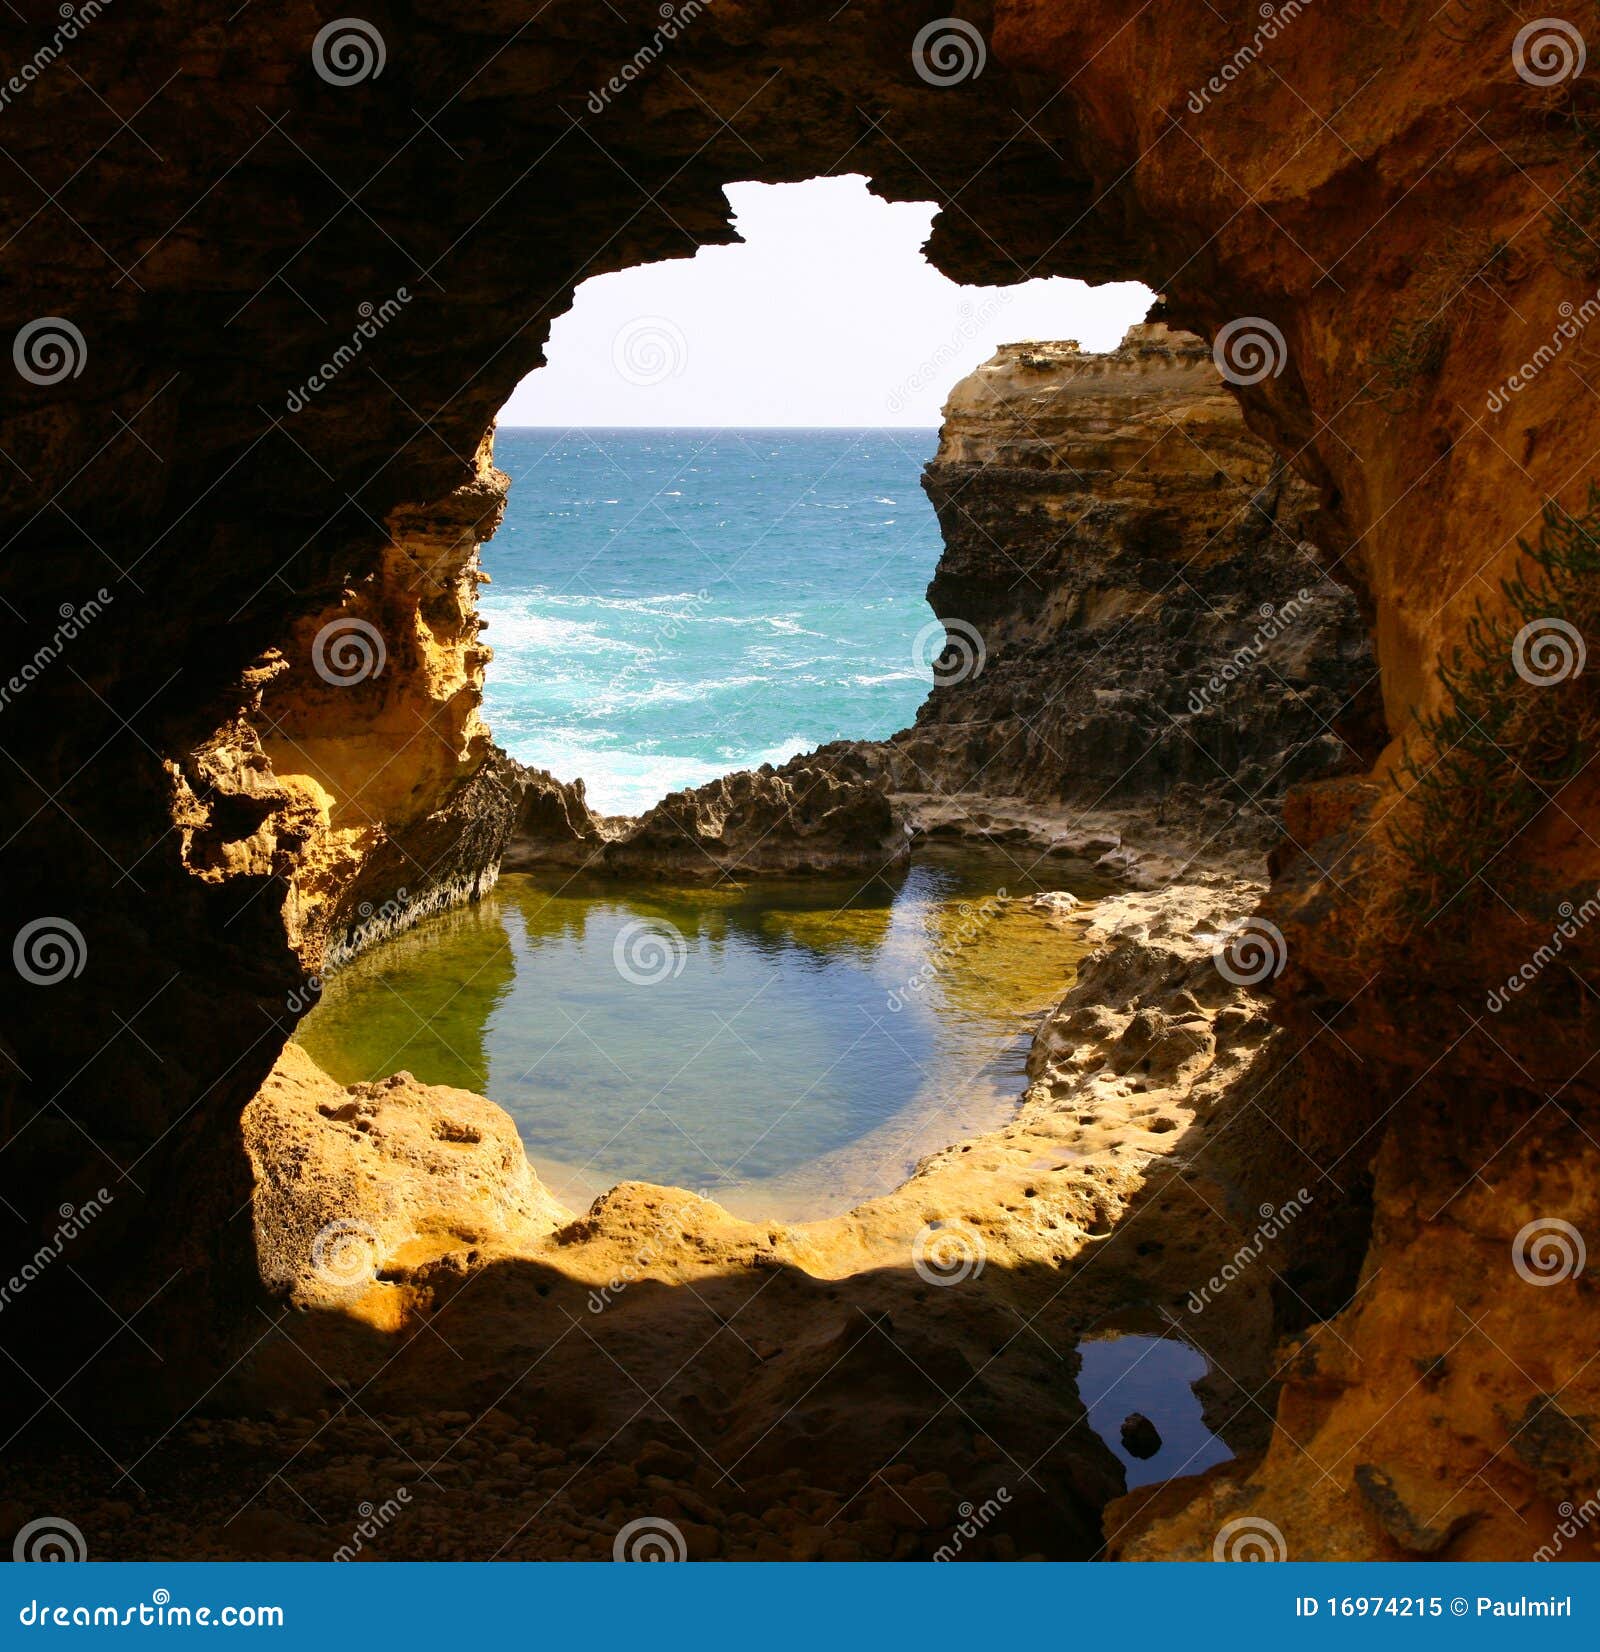 ocean grotto